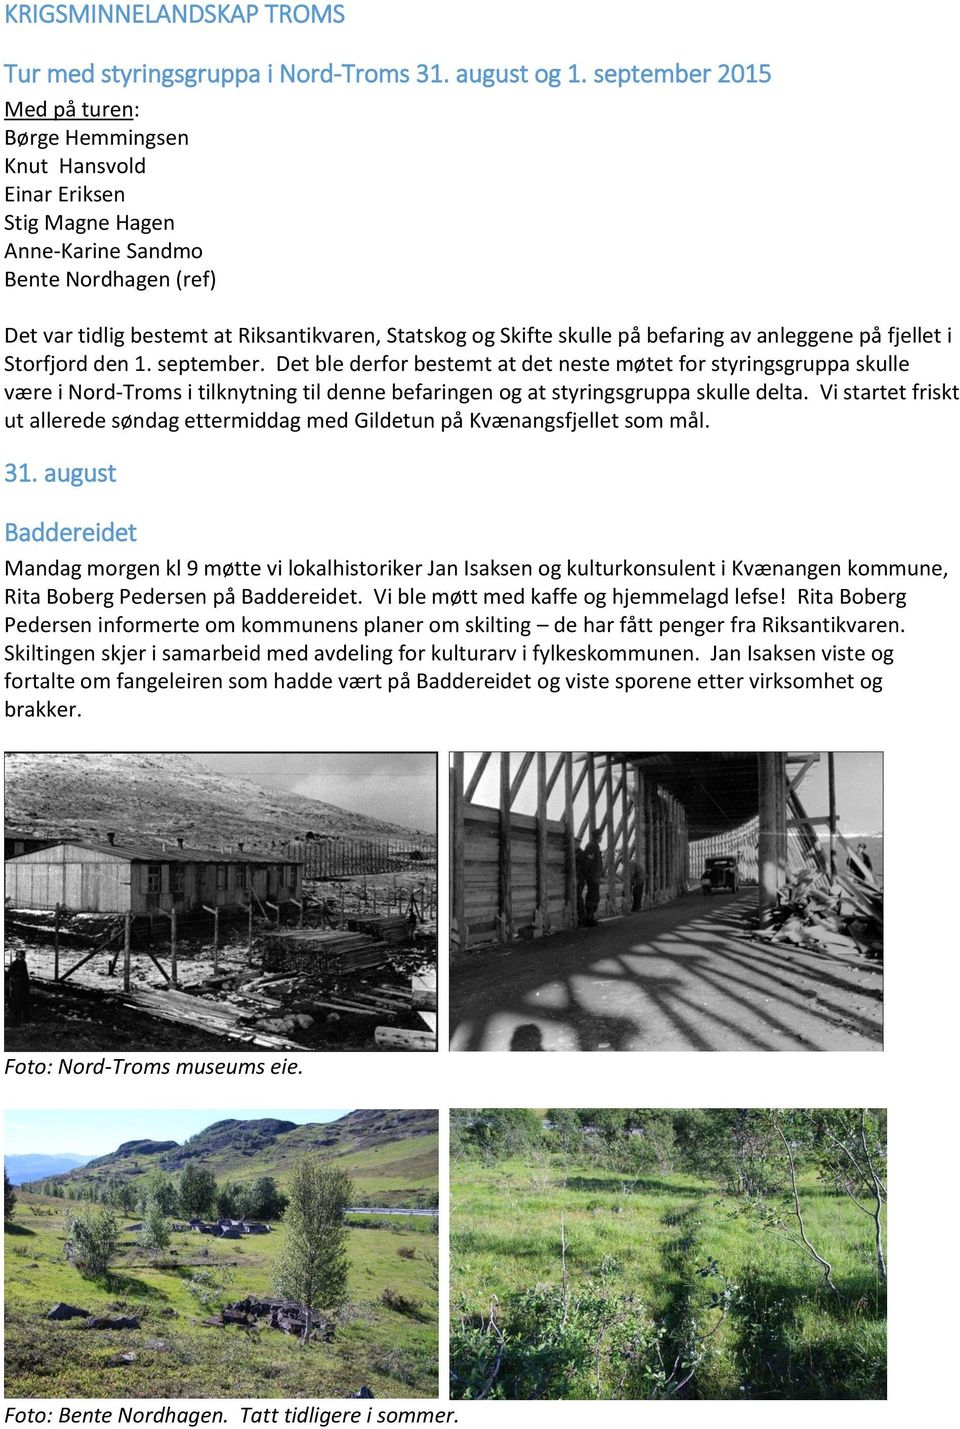 på befaring av anleggene på fjellet i Storfjord den 1. september.